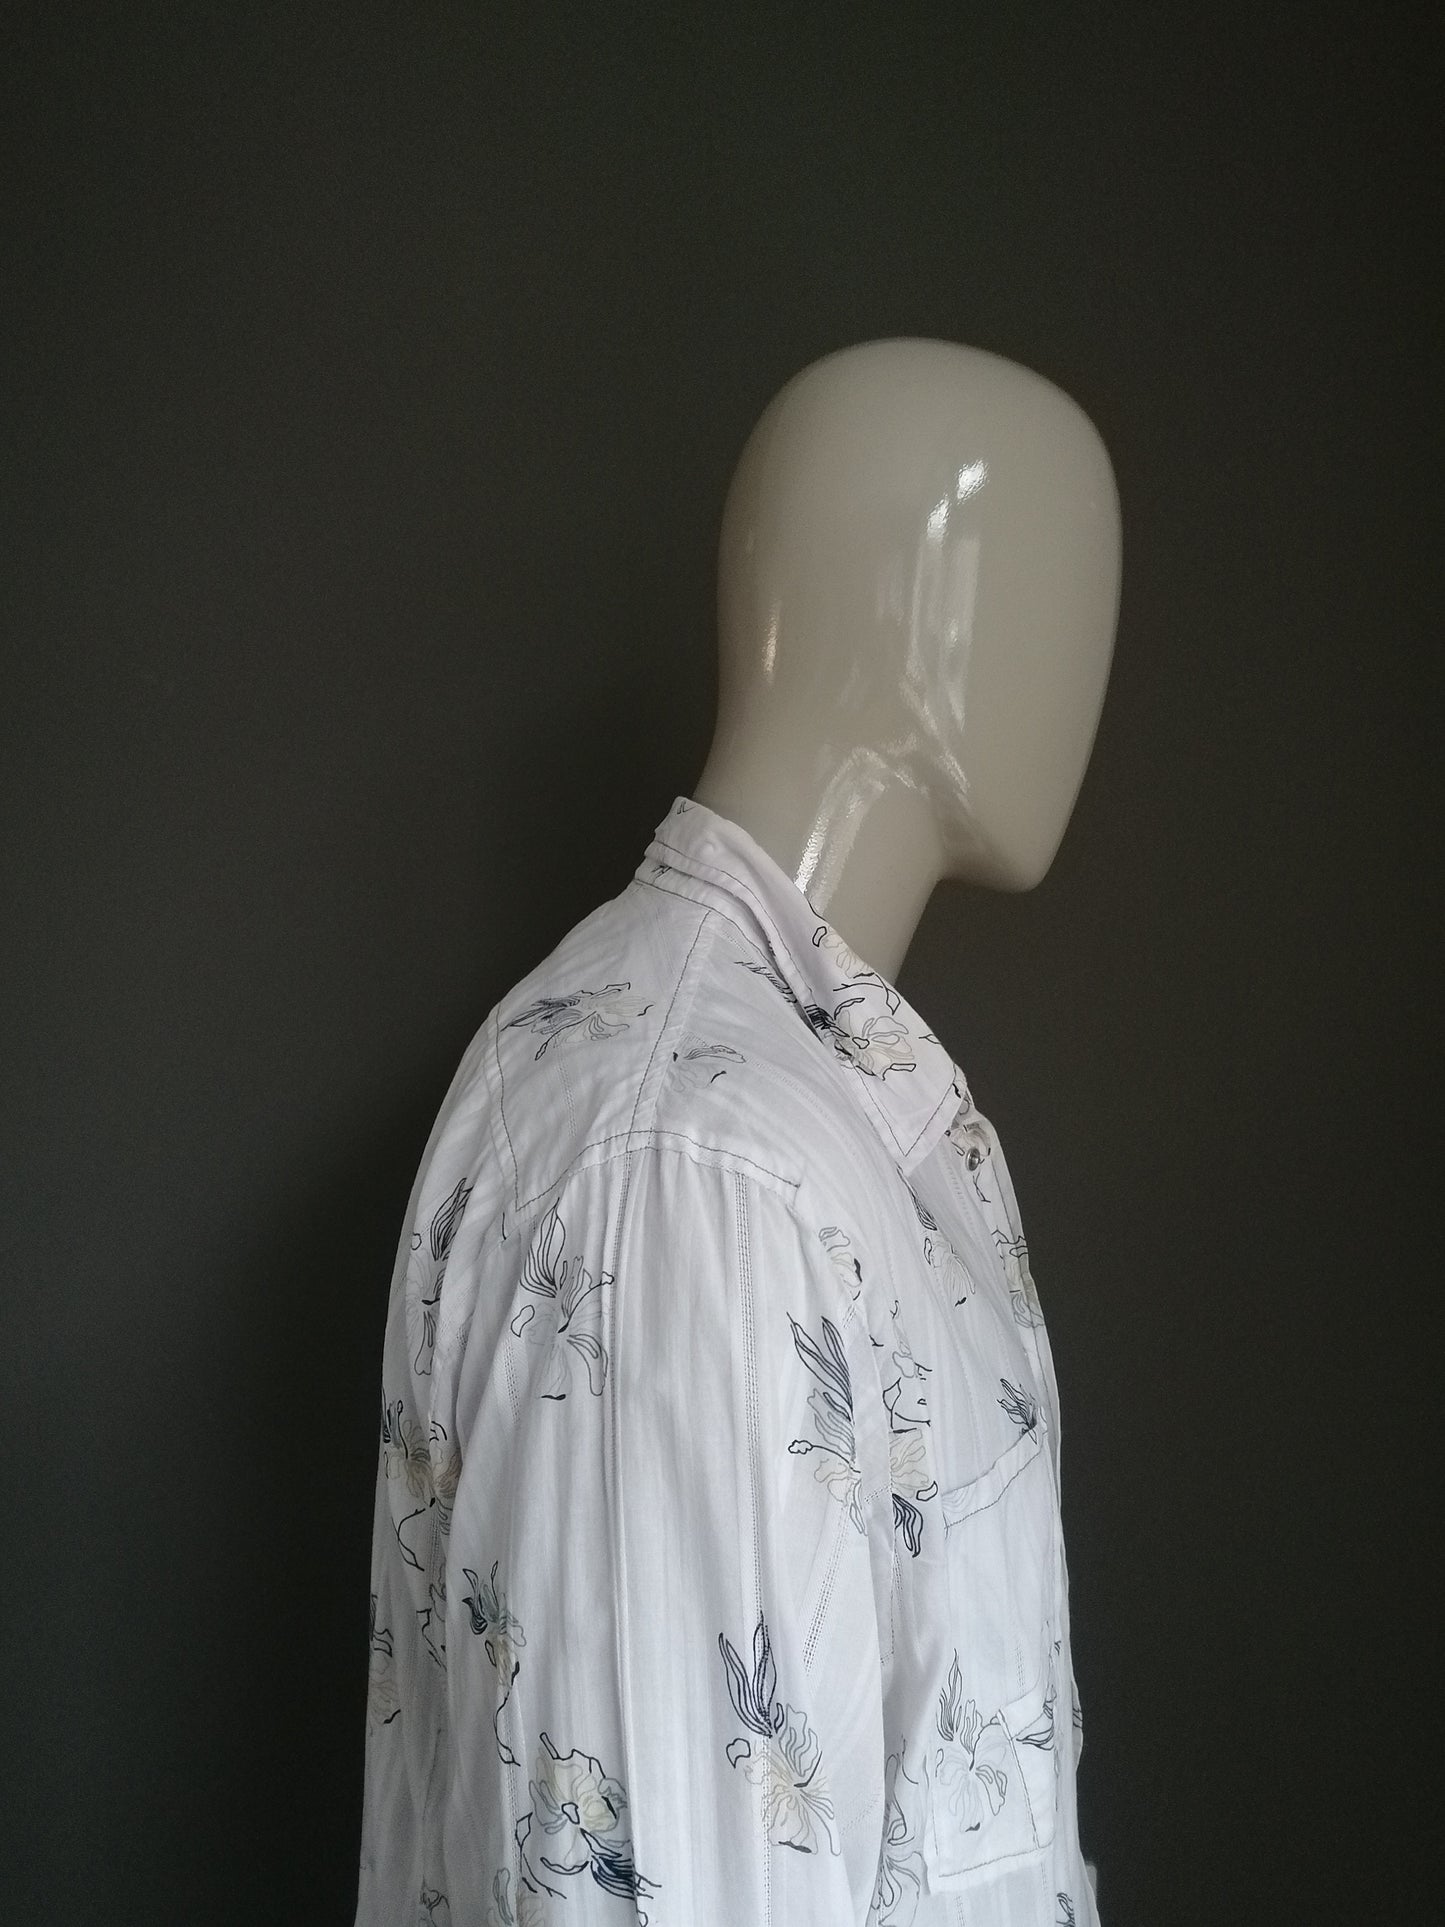 Histreet Shirt Vintage avec des poteaux de presse. Imprimé motif floral bleu beige. Taille XXL / 2XL